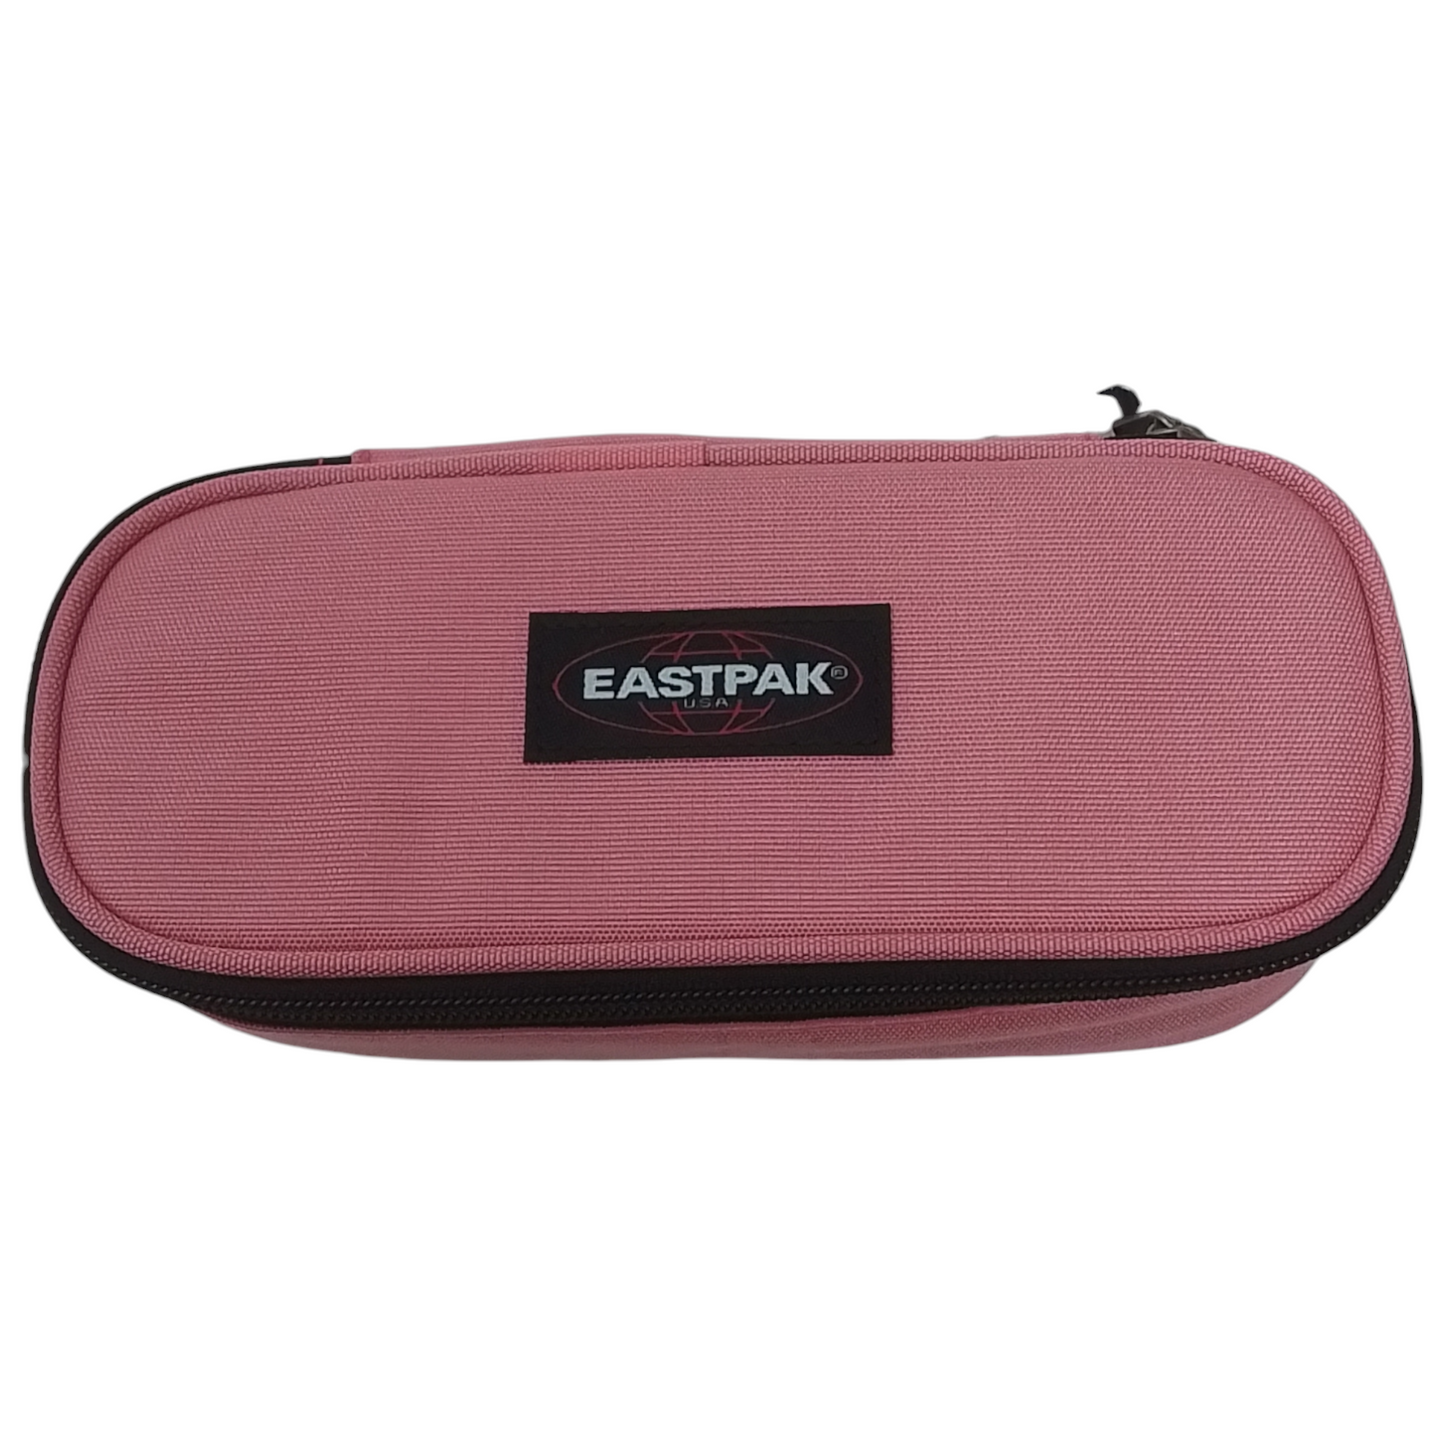 EASTPAK - Astucci